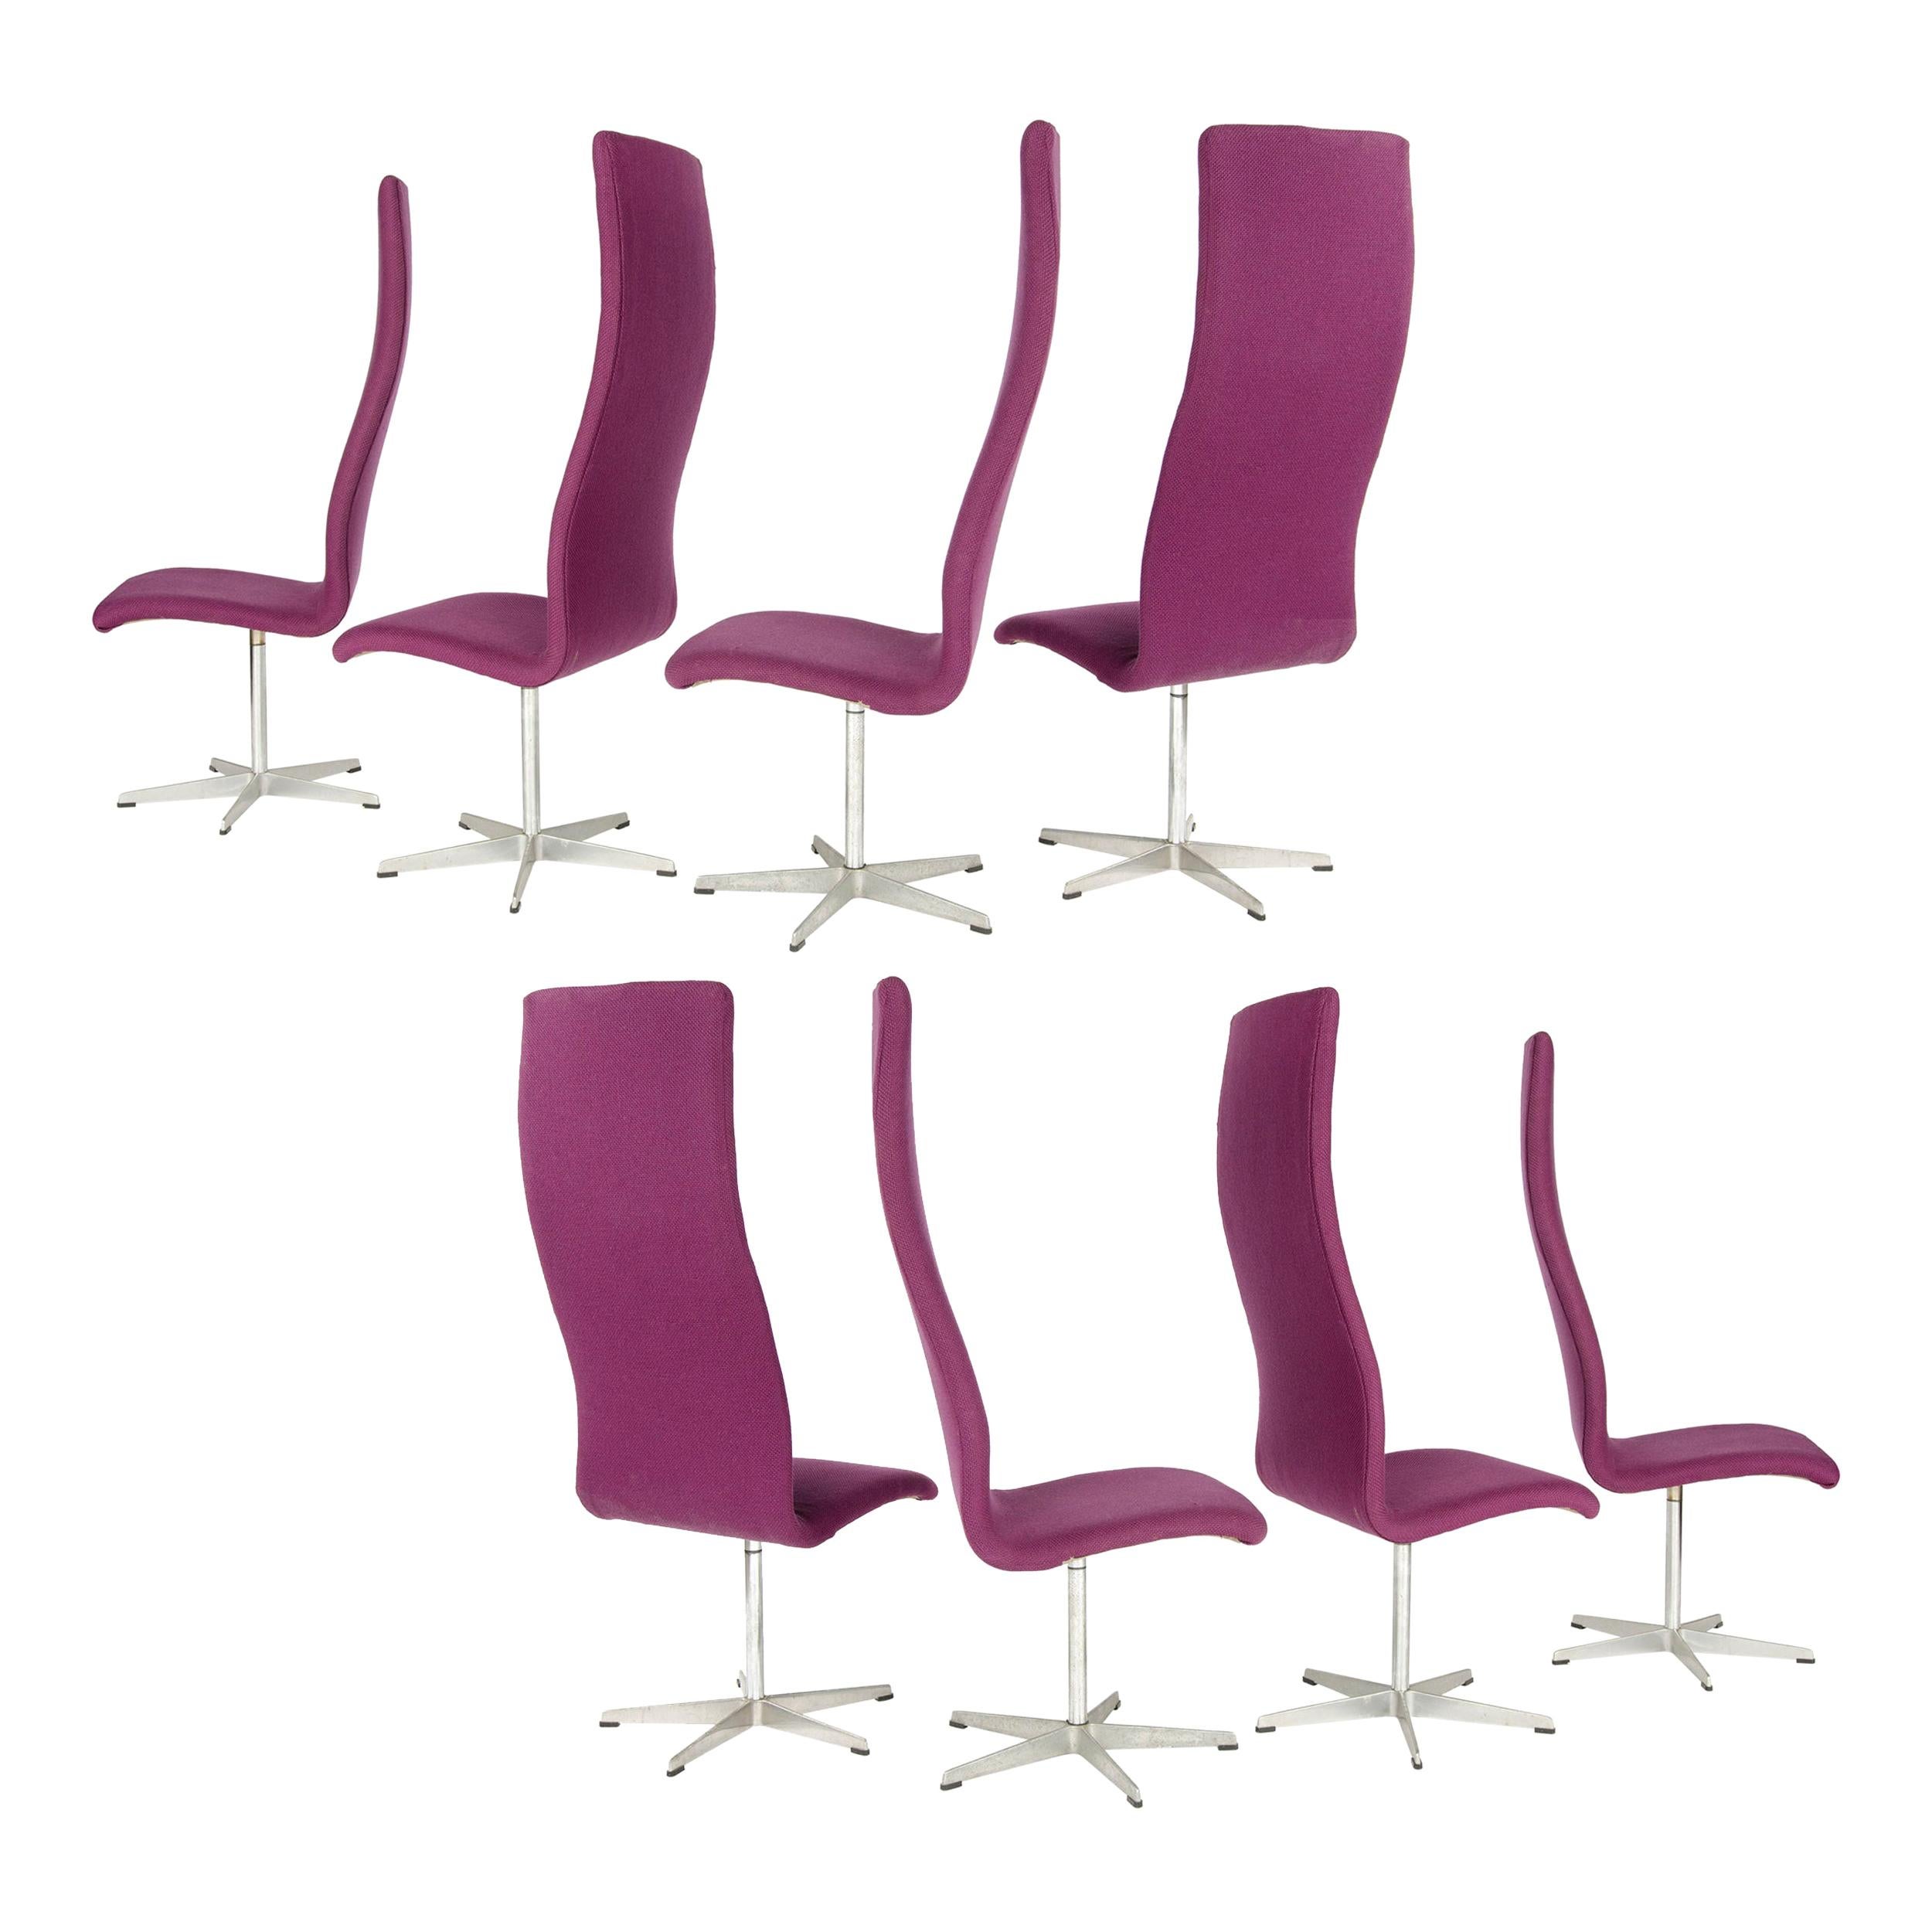 1960s Set of 8 Danish High Back "Oxford" Chair by Arne Jacobsen for Fritz Hansen